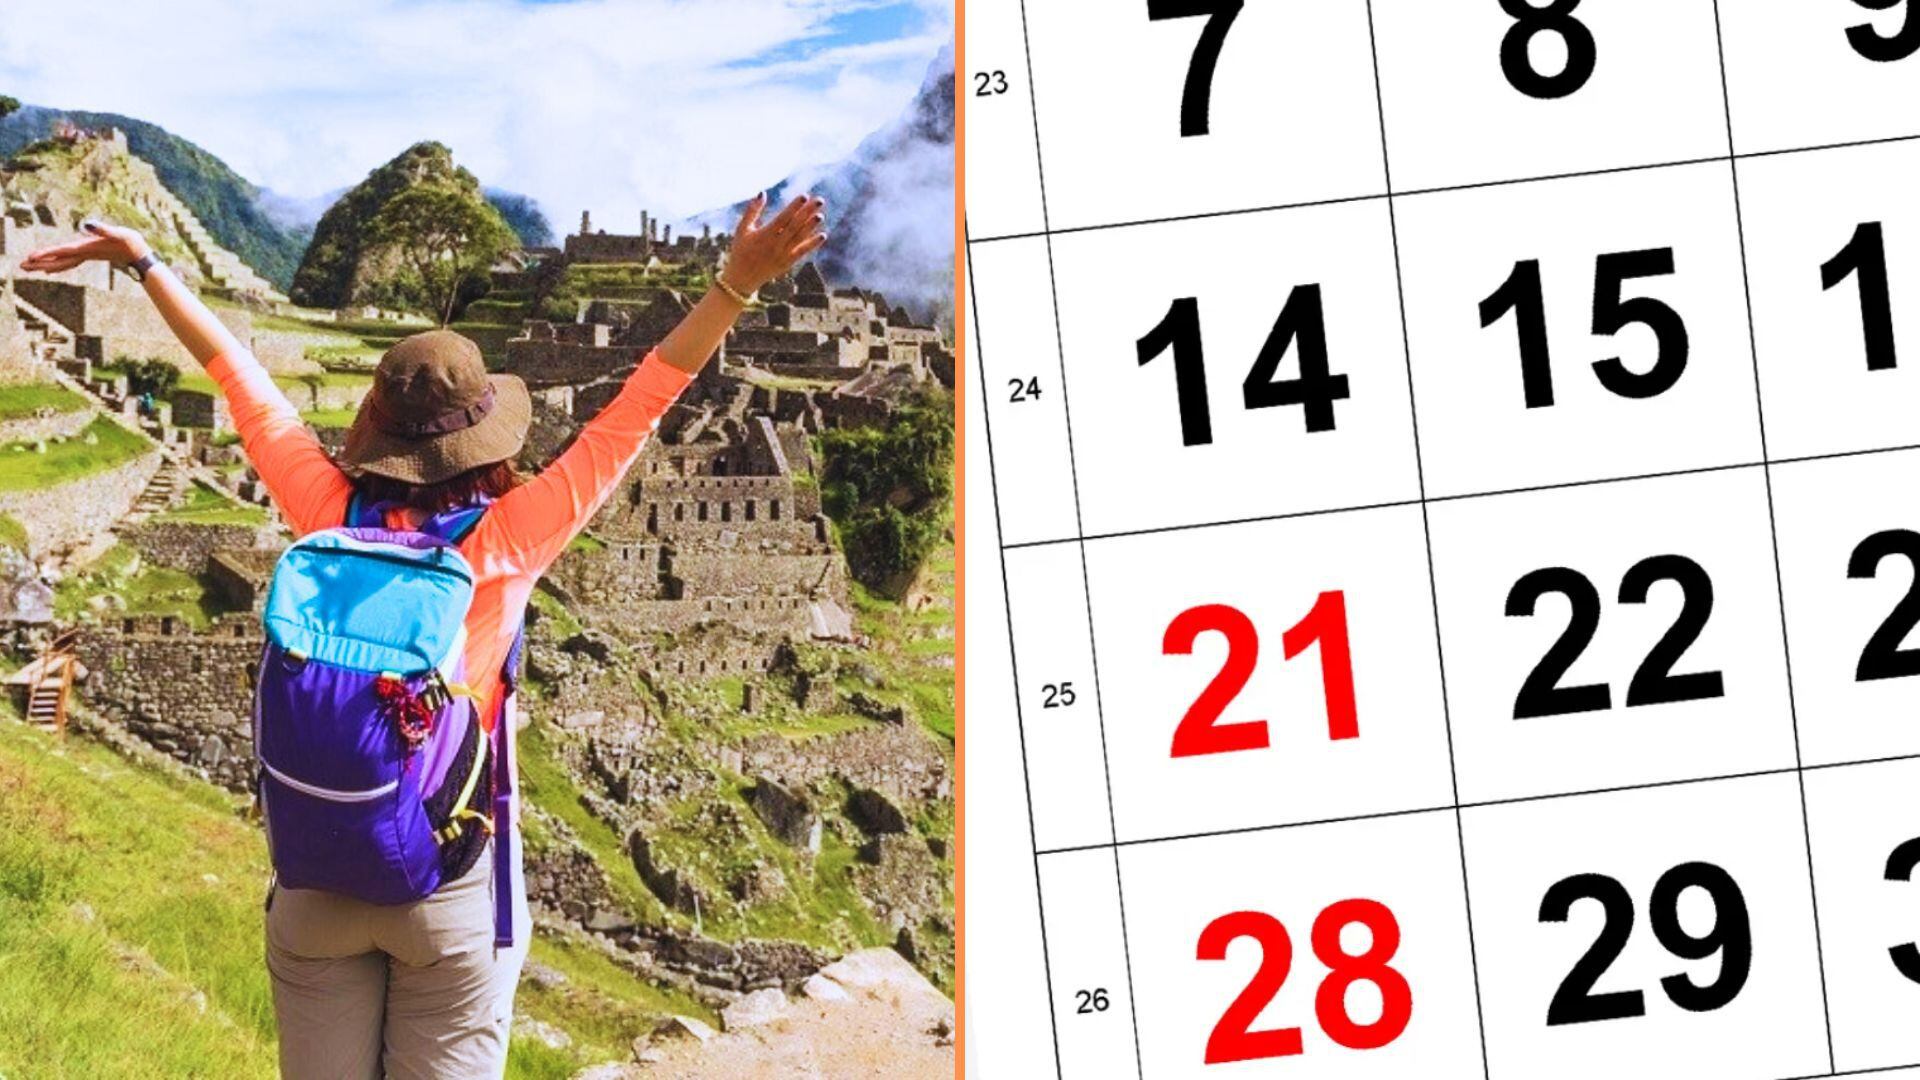 Persona libre con los brazoz arriba en Machu Picchu y calendario de junio con el 21 rojo